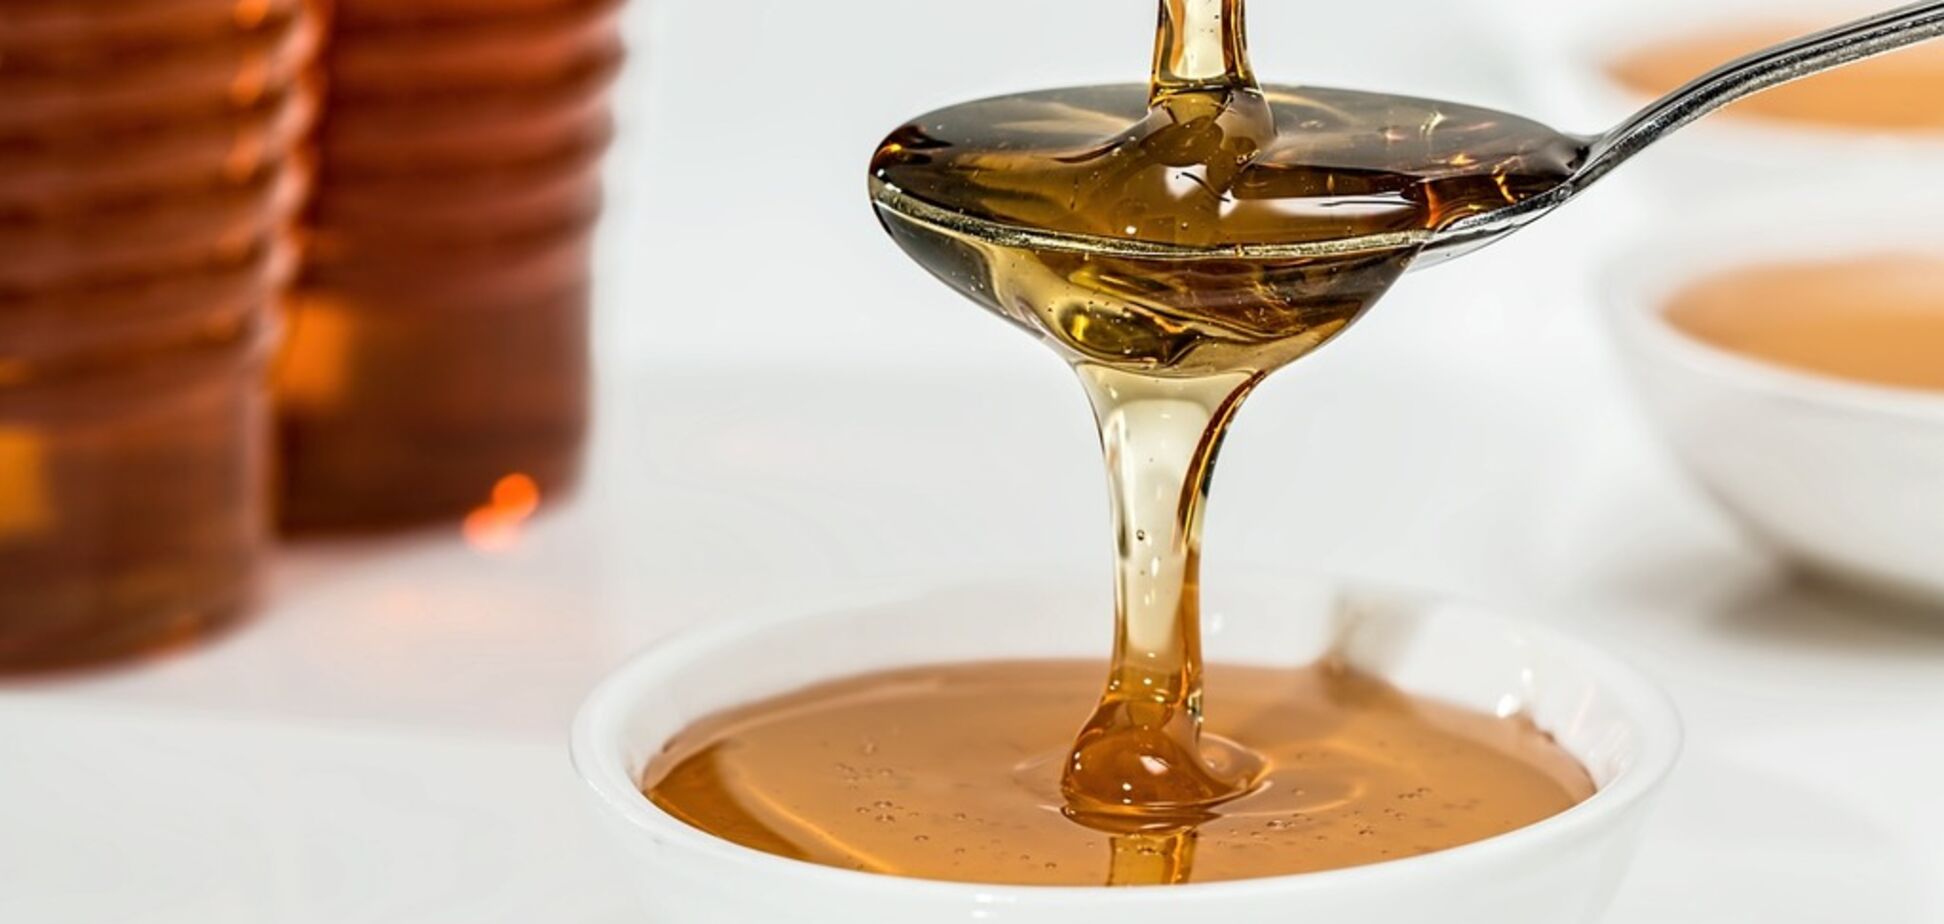 Розвінчано популярний міф про користь меду